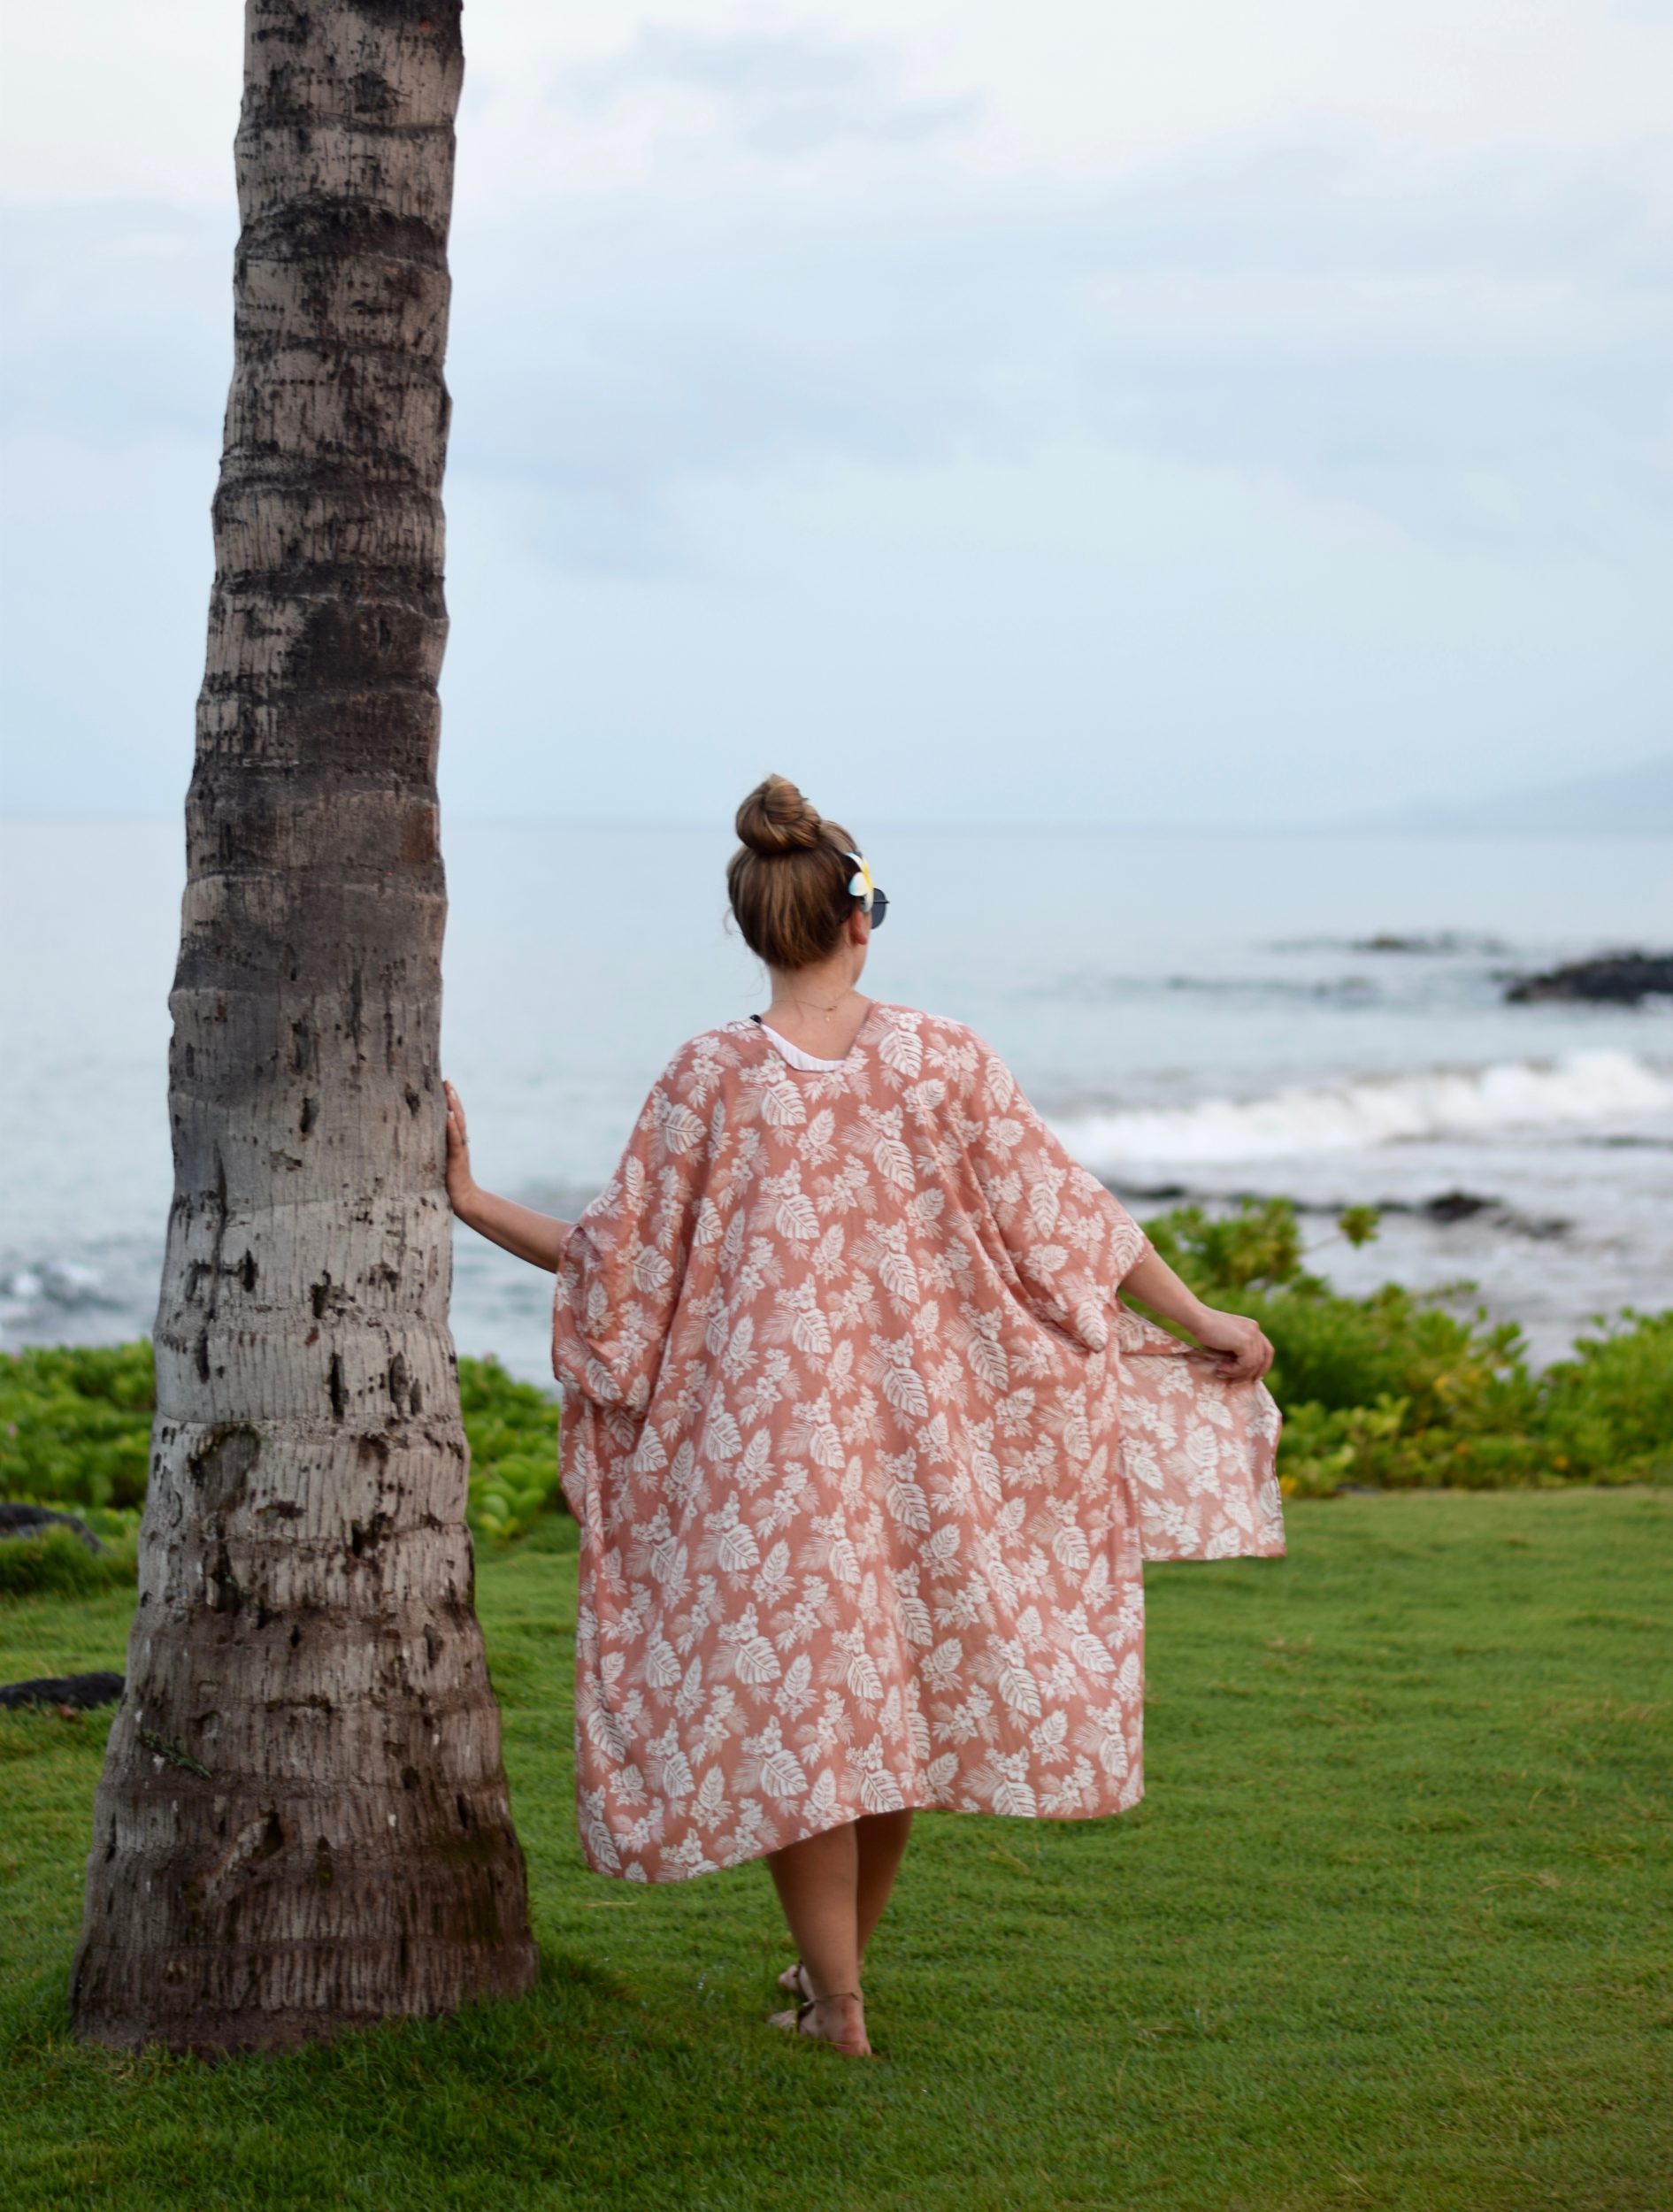 Kimono in Hawaii